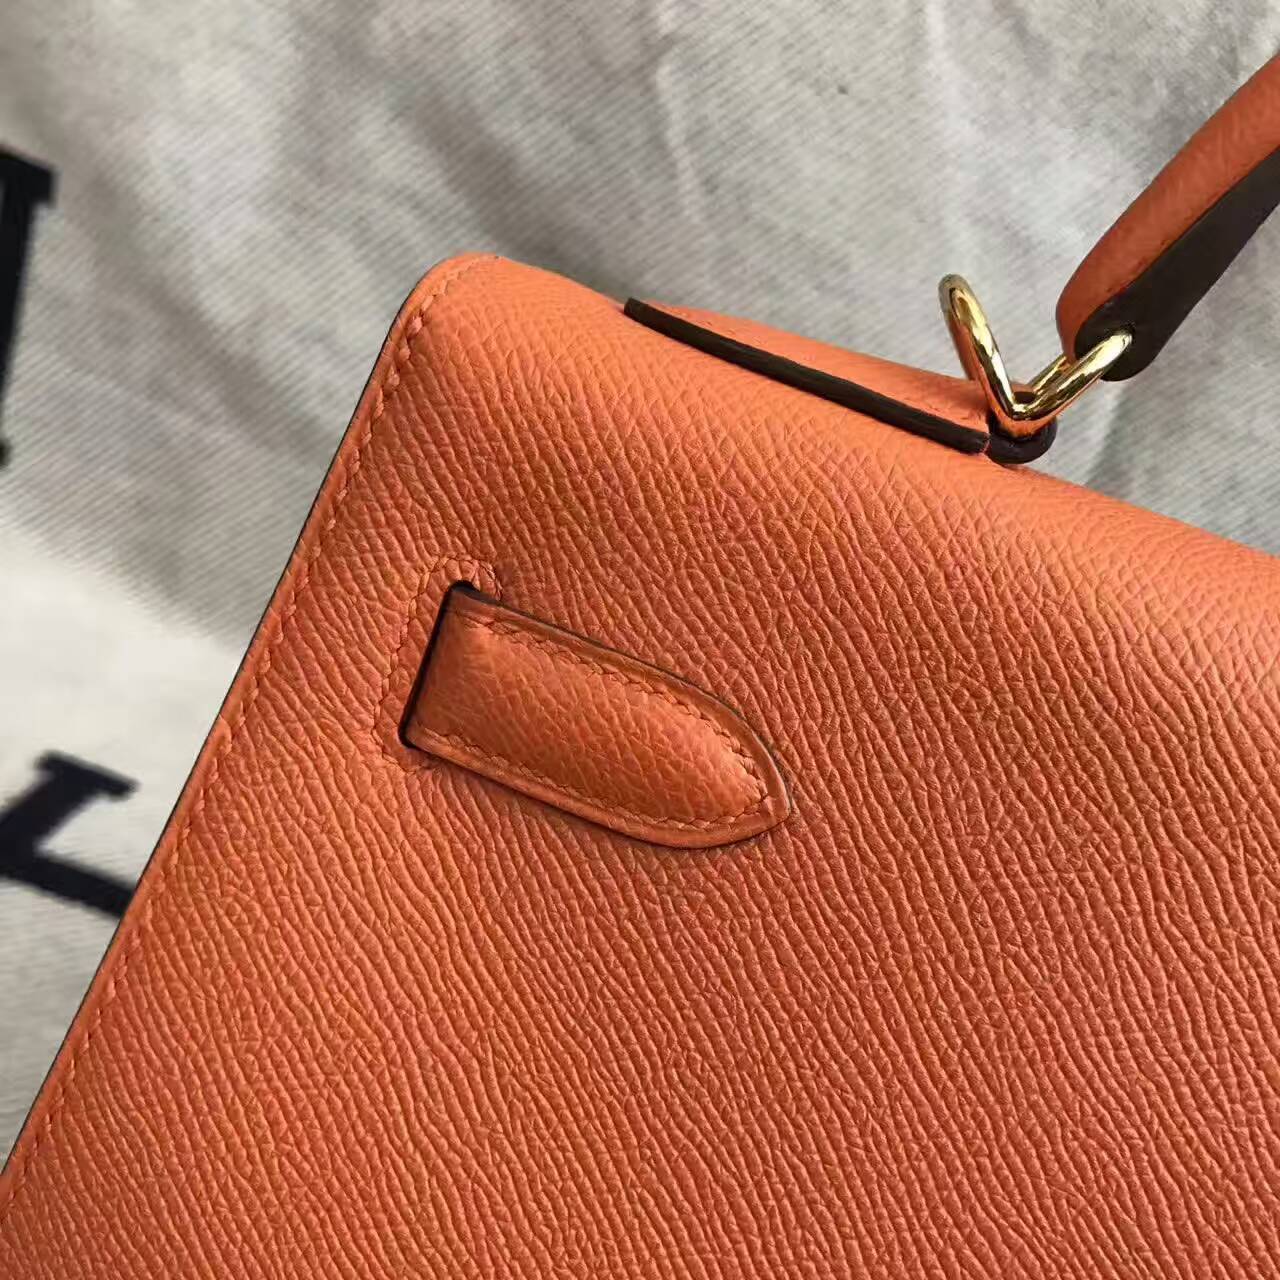 Discount Hermes 93 Orange Epsom Calfskin Leather Sellier Kelly Bag 32CM